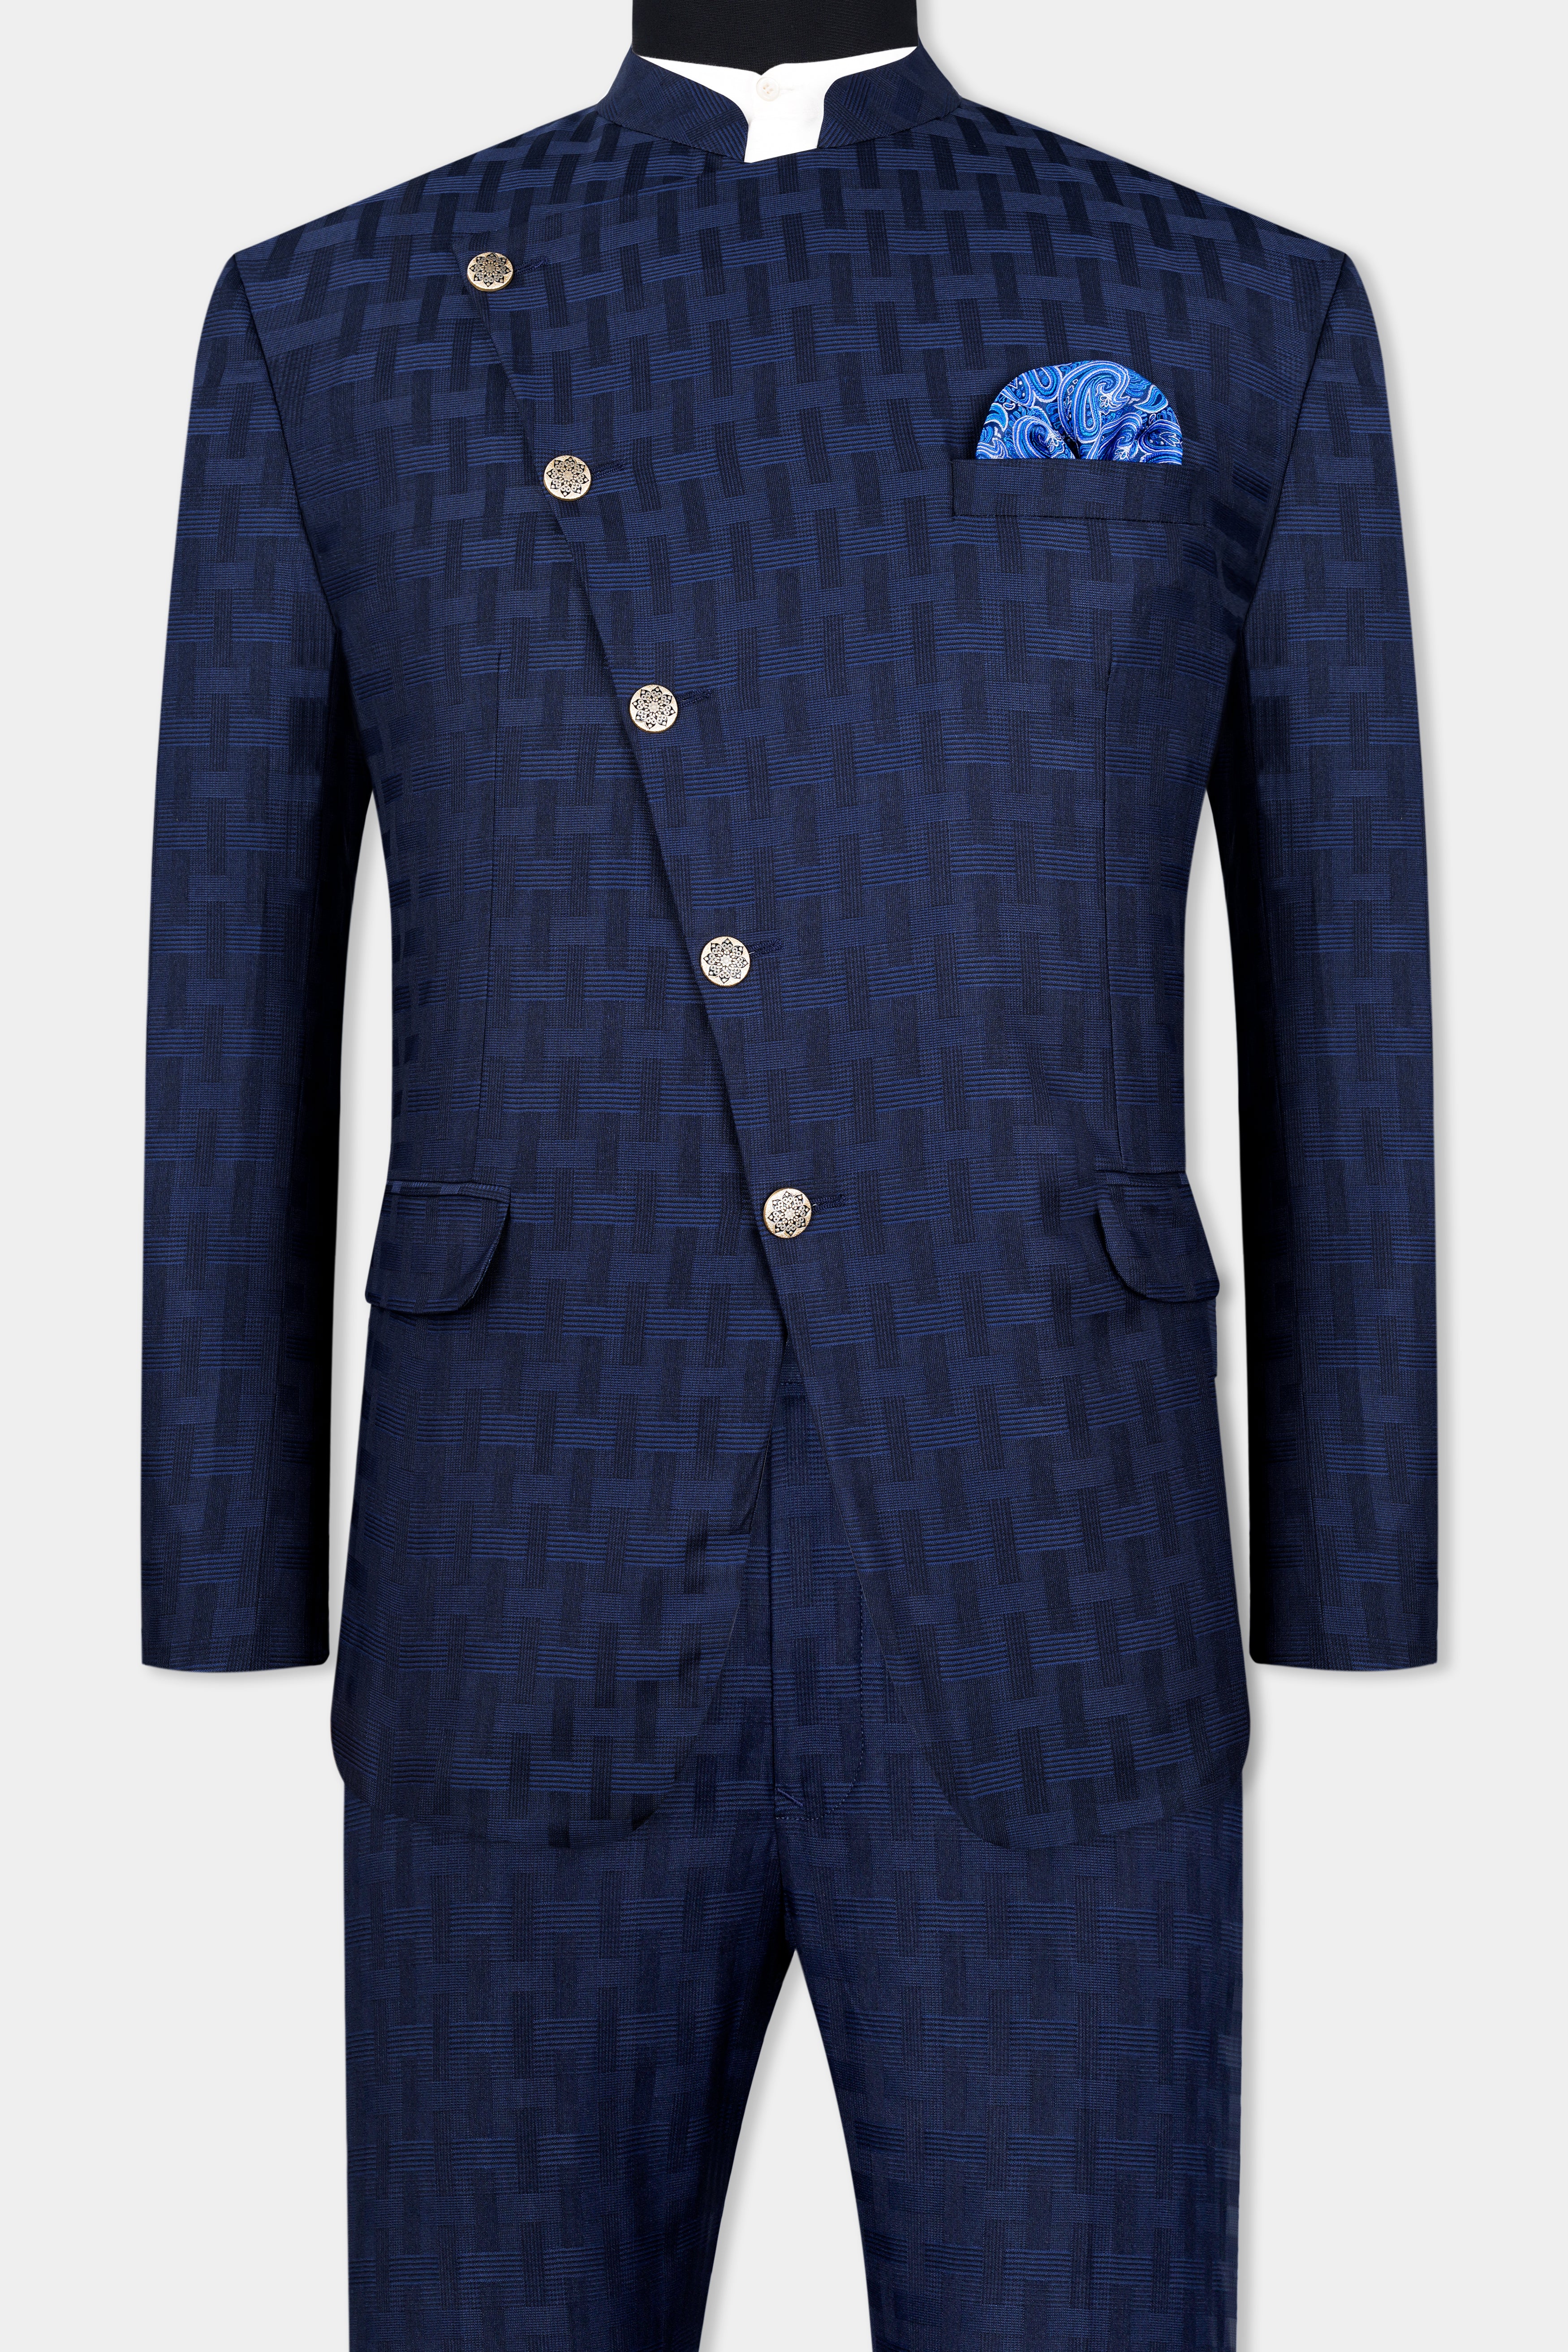 Haiti Blue Wool Rich Cross Buttoned Bandhgala Suit ST2956-CBG-36, ST2956-CBG-38, ST2956-CBG-40, ST2956-CBG-42, ST2956-CBG-44, ST2956-CBG-46, ST2956-CBG-48, ST2956-CBG-50, ST2956-CBG-52, ST2956-CBG-54, ST2956-CBG-56, ST2956-CBG-58, ST2956-CBG-60